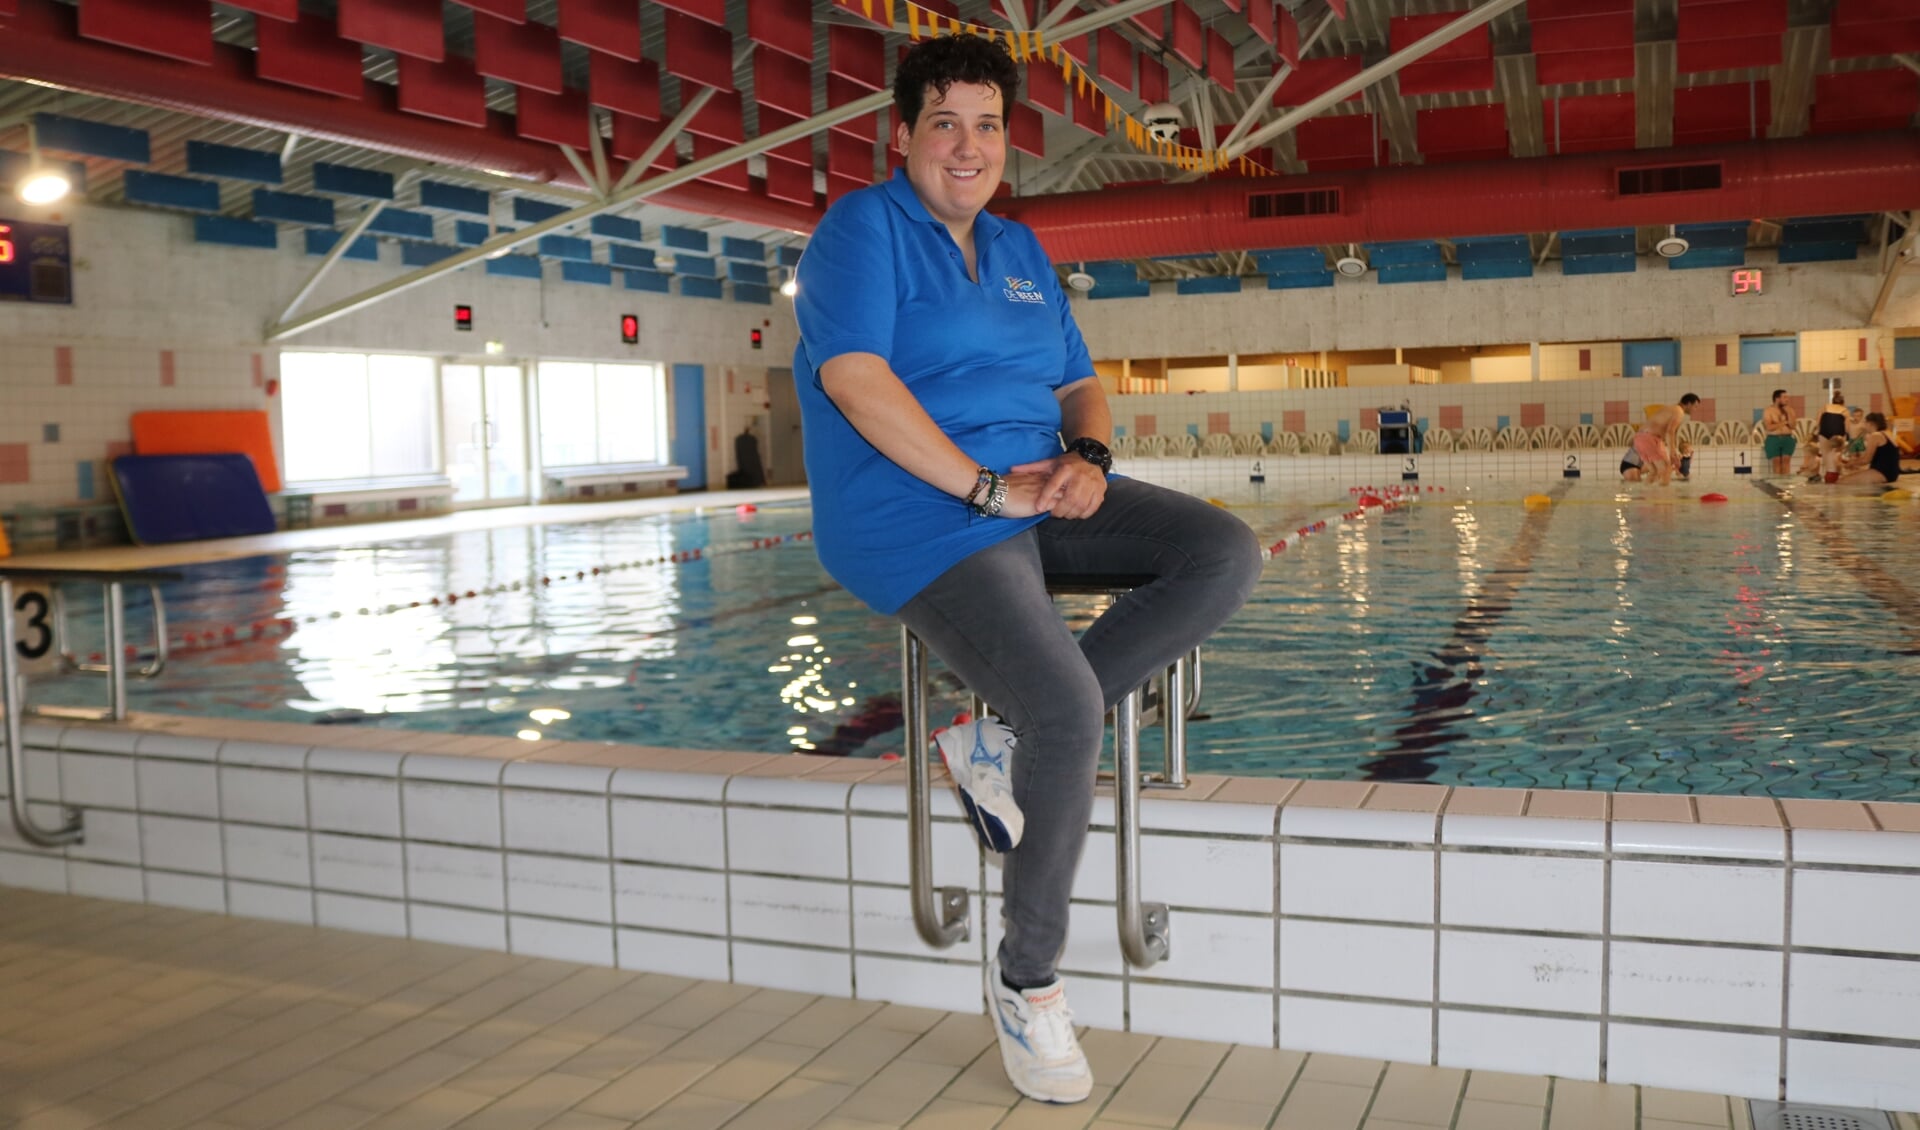 Kirsten ten Harkel, al vijftien jaar werkzaam in het team van zwembad De Beemd, ziet graag nieuwe collega's komen. Foto: Arjen Dieperink